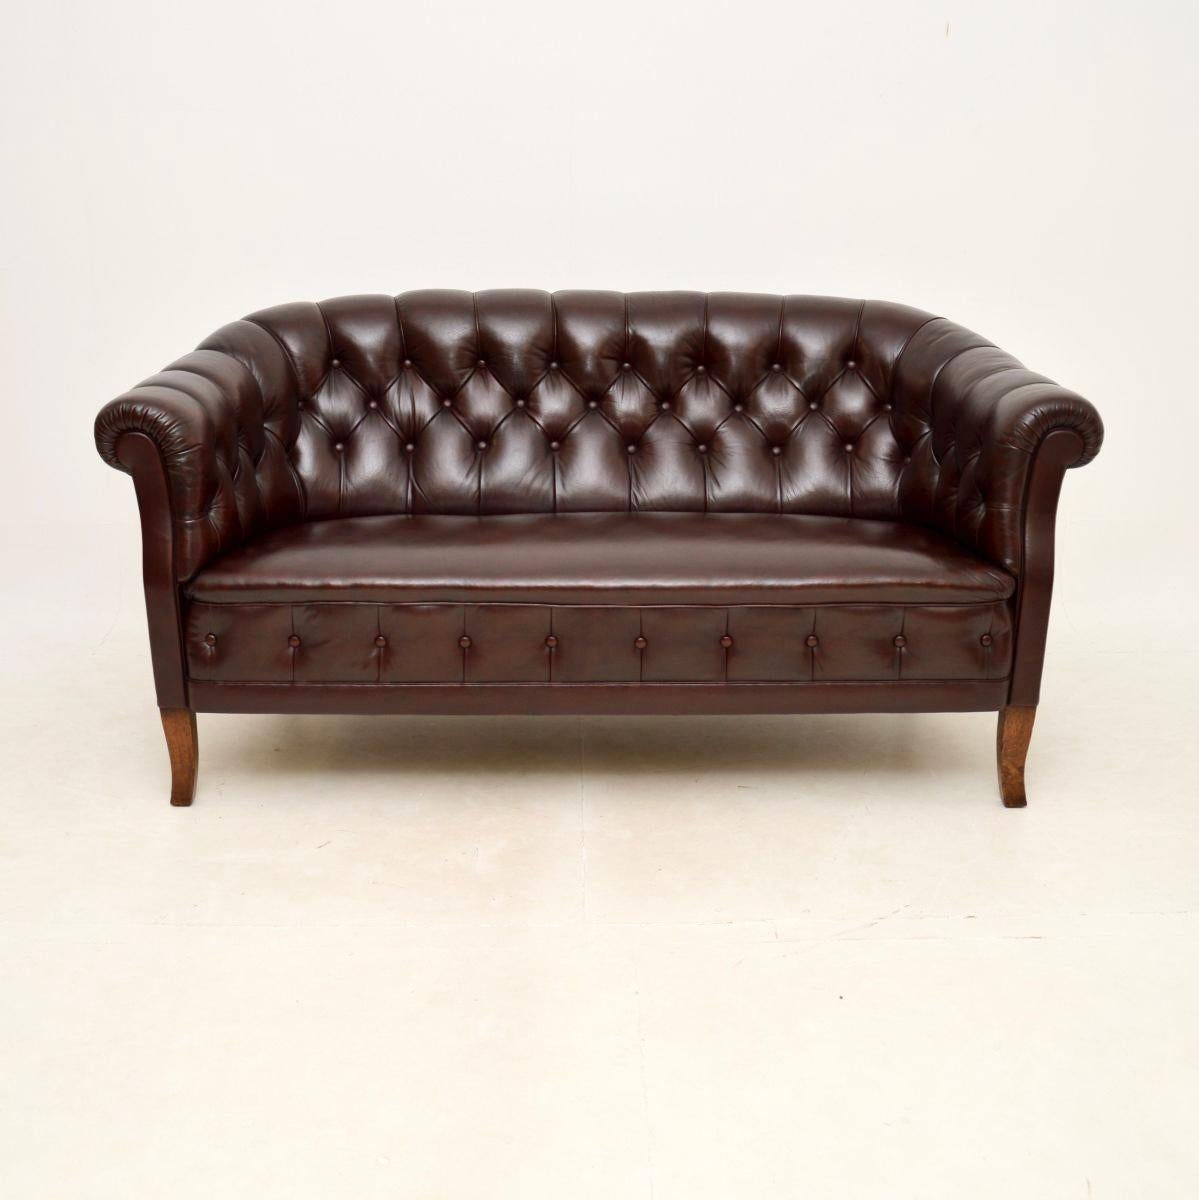 Un canapé en cuir suédois ancien absolument magnifique. Nous l'avons récemment importé de Suède, il date d'environ 1900-1920.

La qualité est superbe et il est très confortable. Le siège est bien suspendu et le cadre repose sur des pieds en chêne